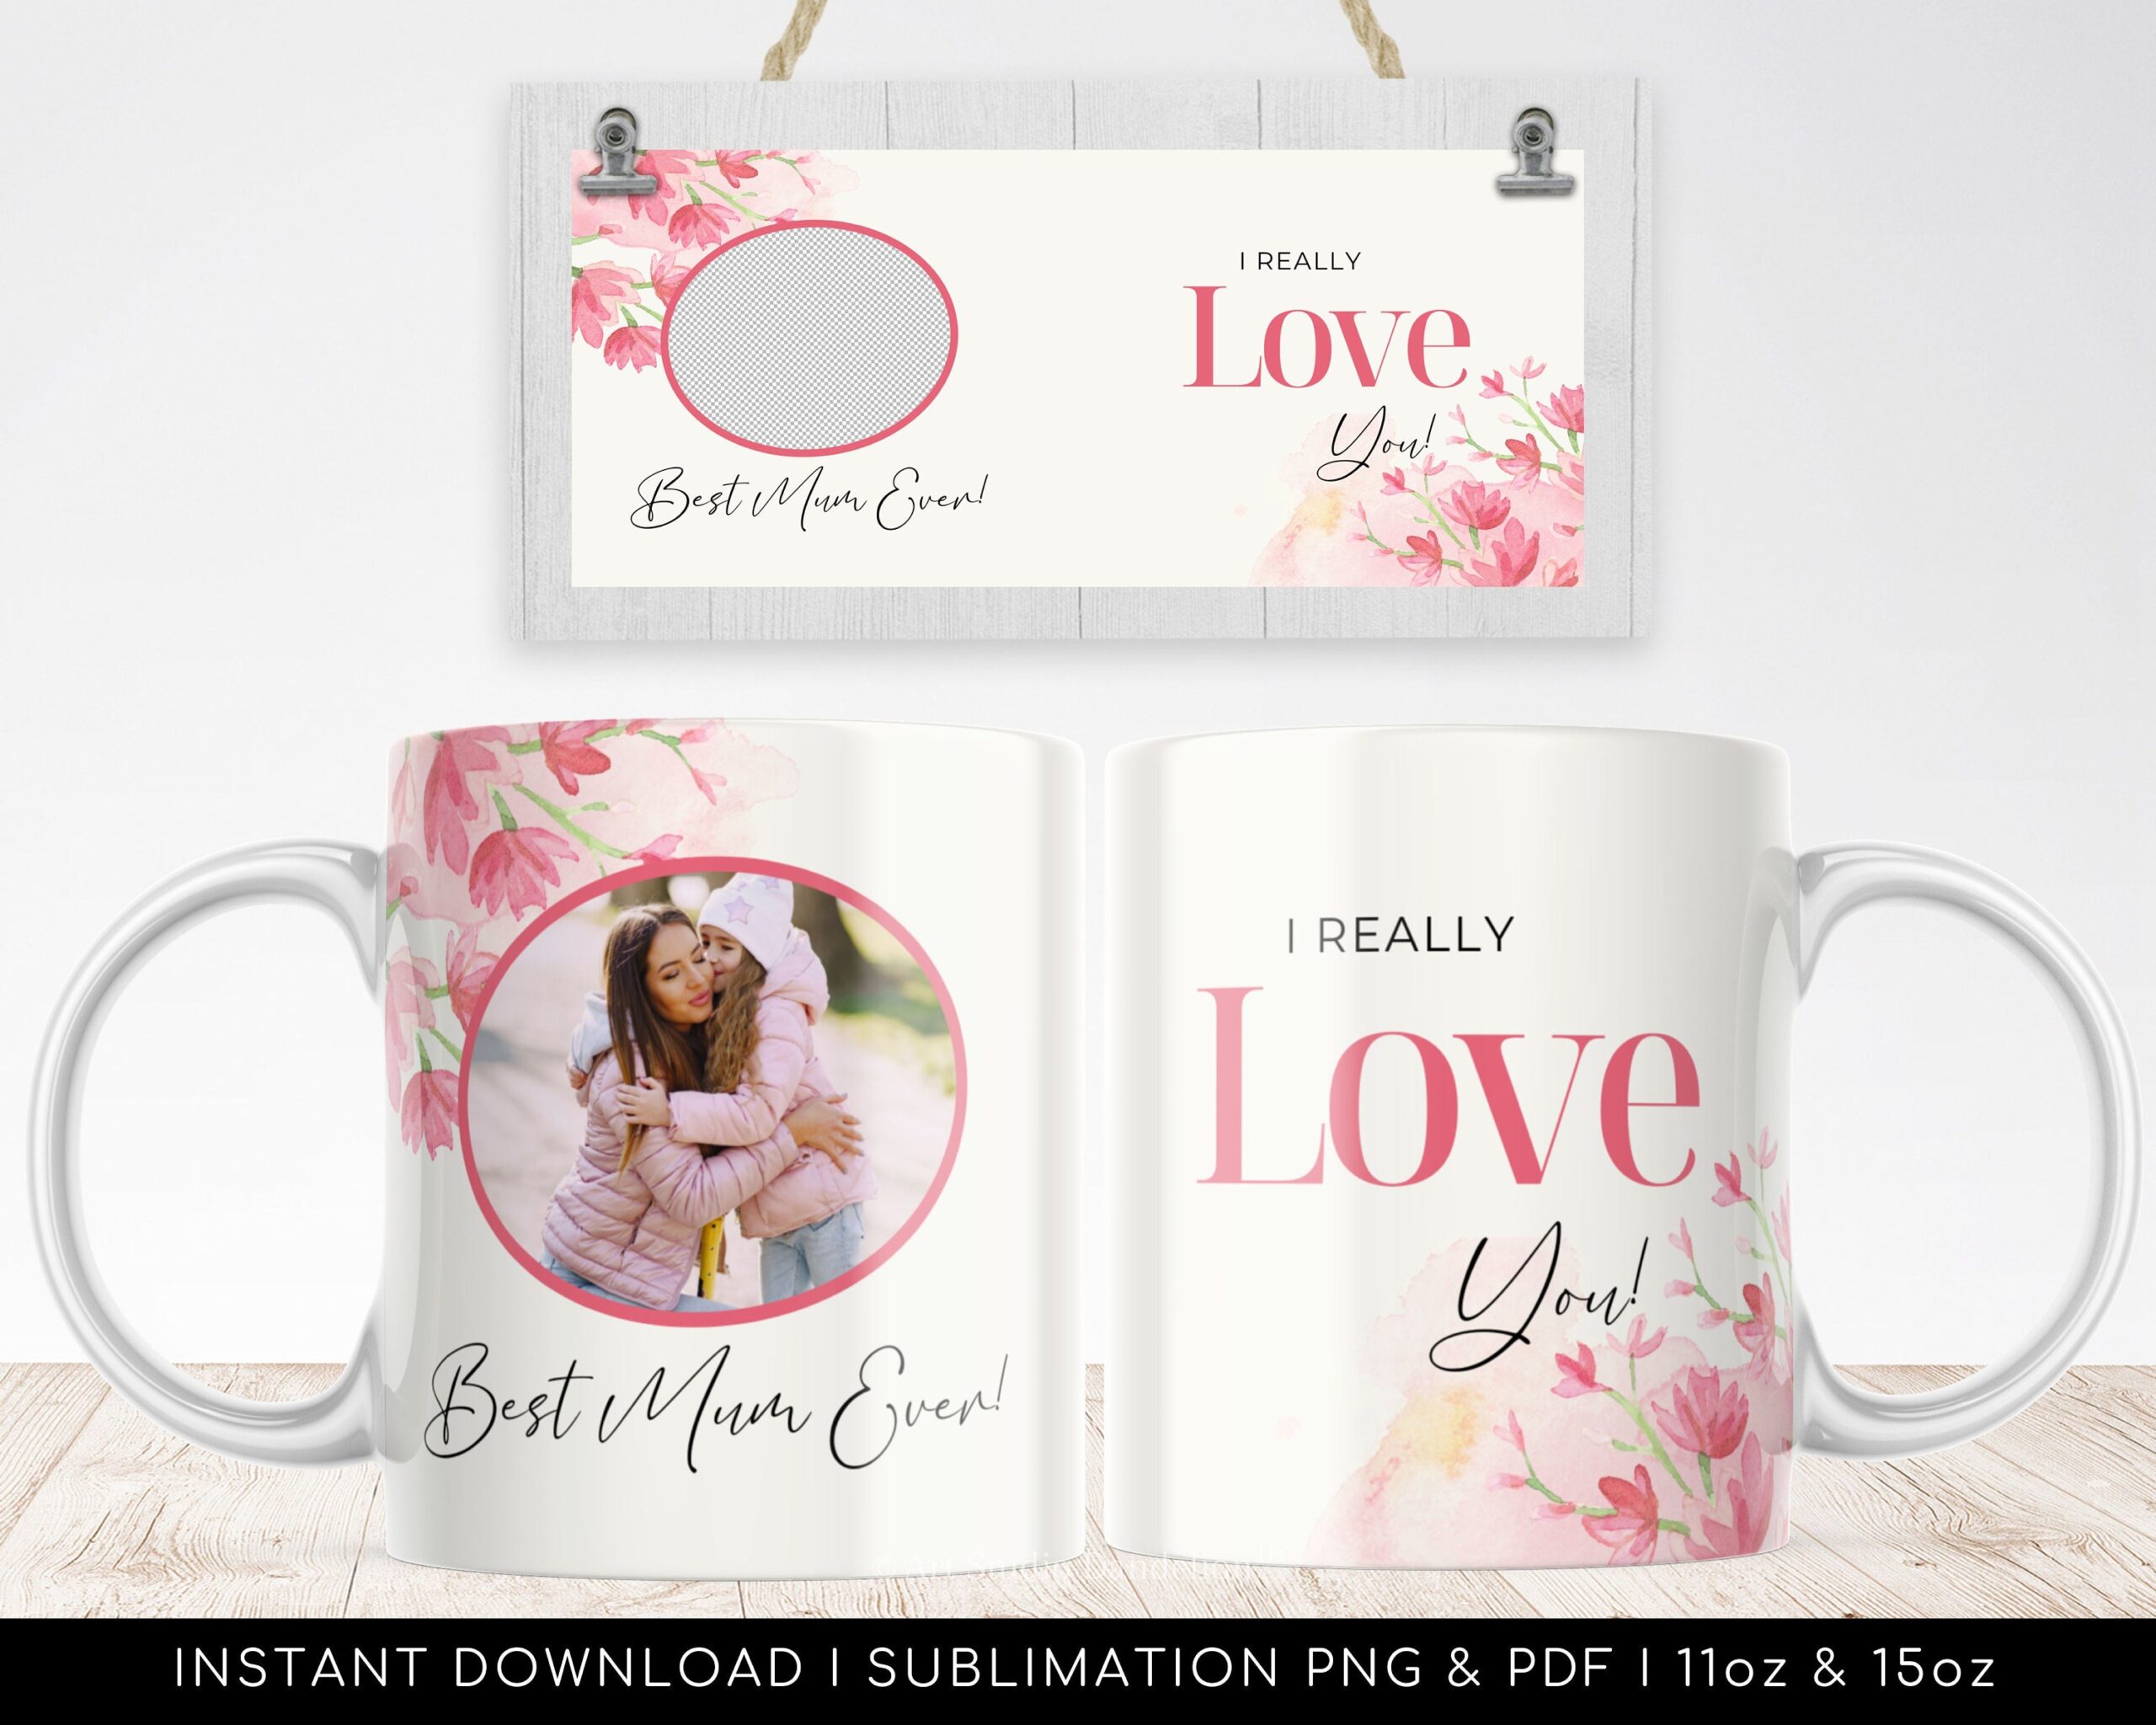 MUM Mug Design Sublimation - Floral Best MUM Ever Photo Mug Template - Floral Coffee Mug PNG - Vintage Mug Design - Instant Download